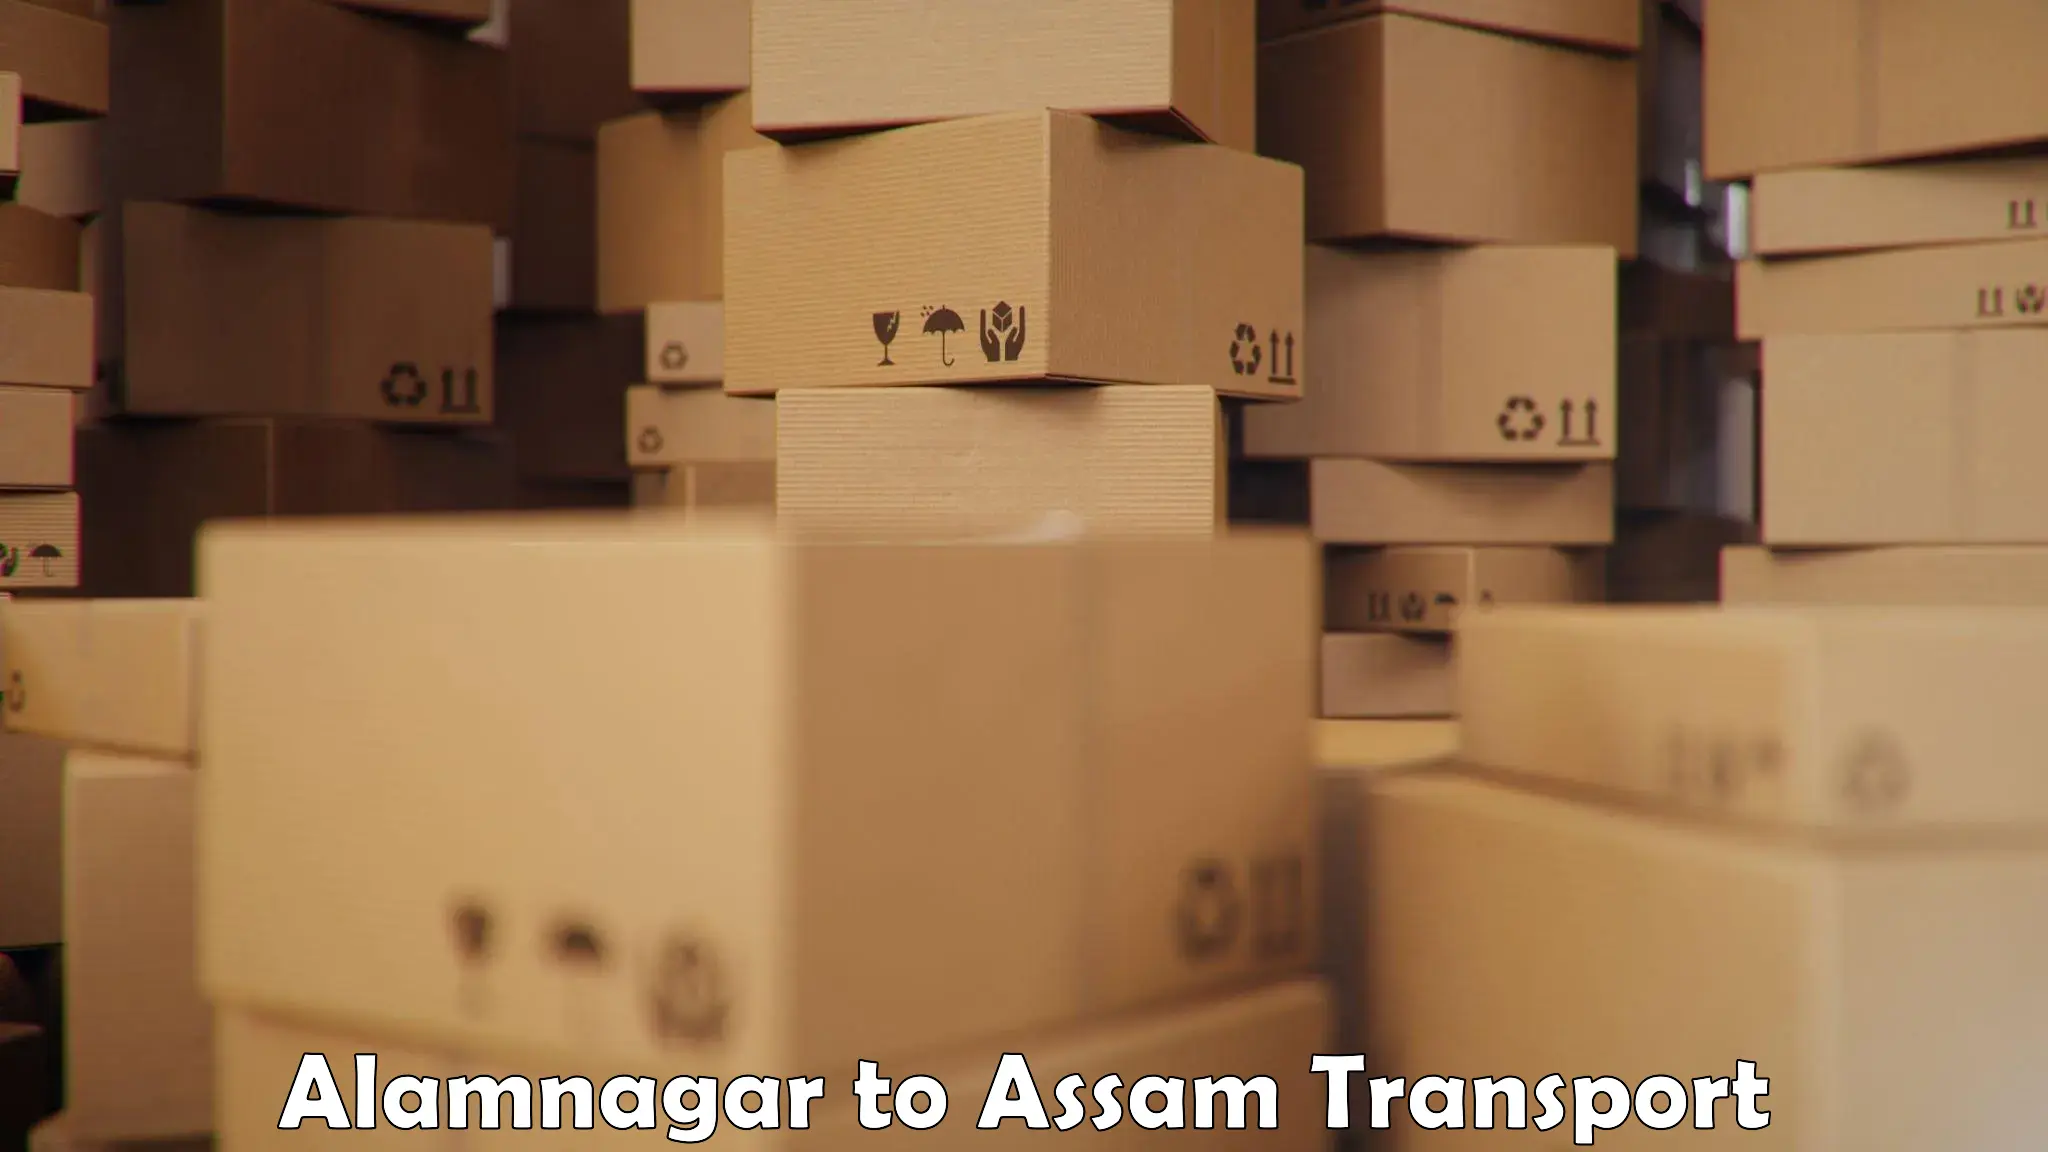 Nearest transport service Alamnagar to Sarthebari